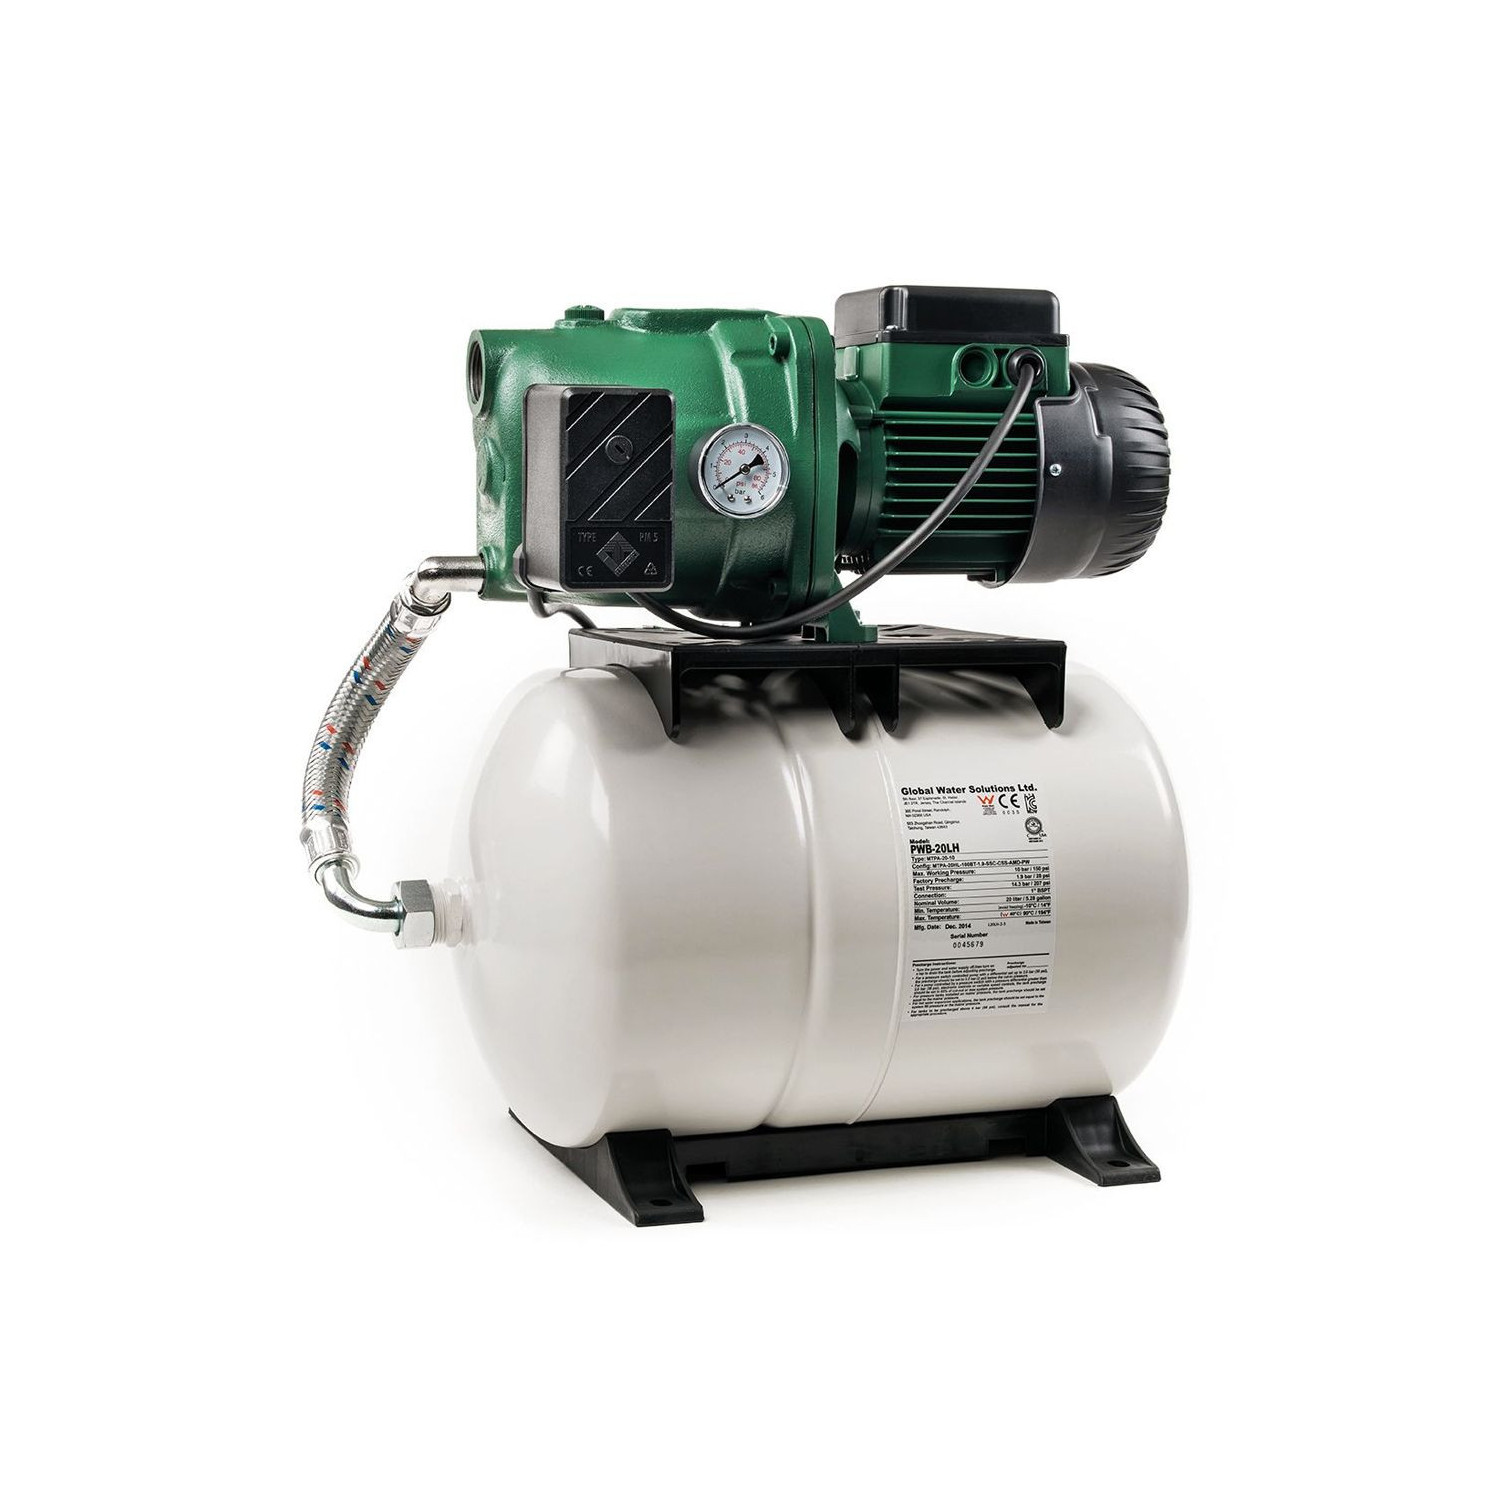 Surpresseur d'eau avec réservoir 100L DAB AQUAJETGWS132100M - 1kW 4,8m3/h 220V